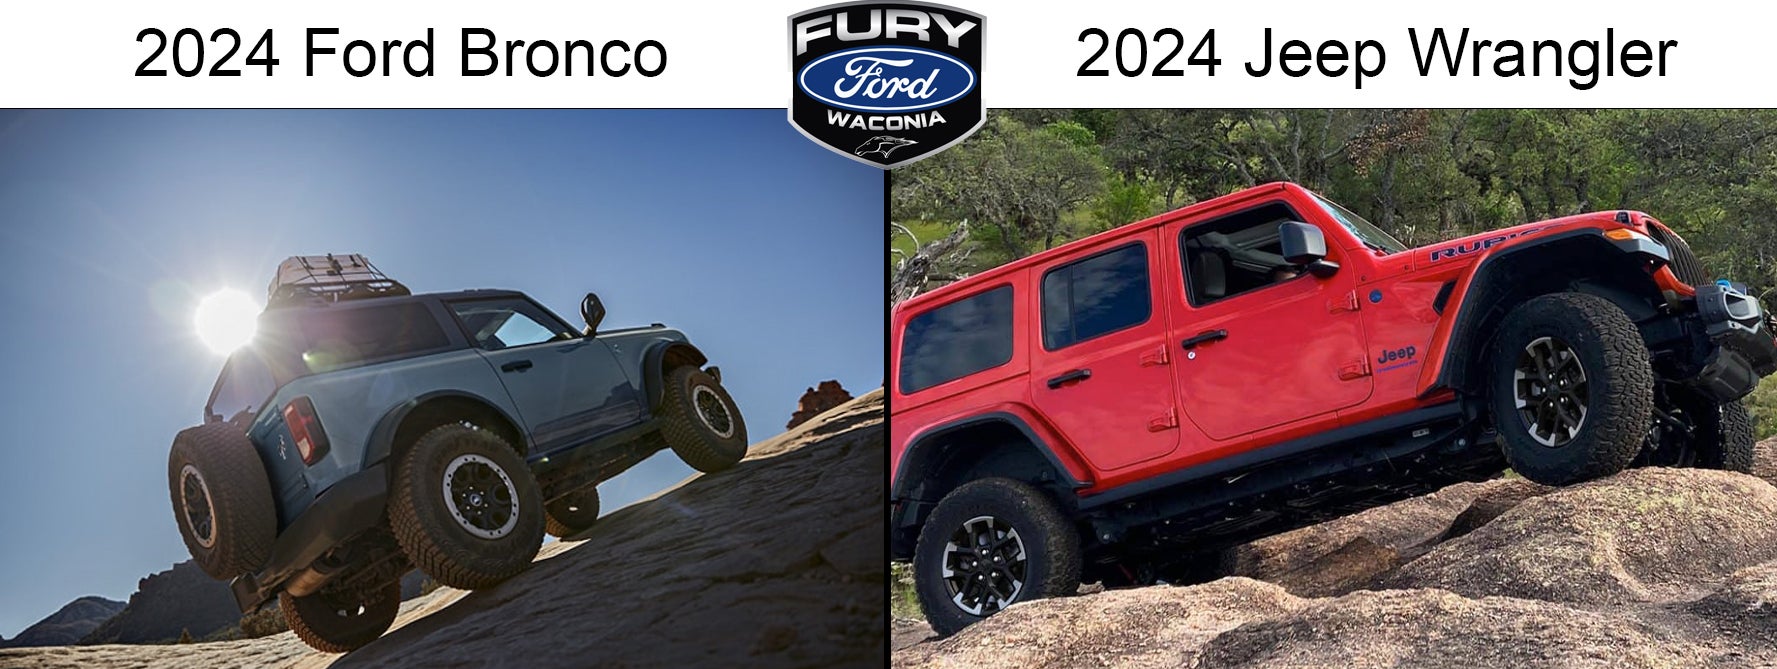 2024 ford bronco vs. the 2024 jeep wrangler